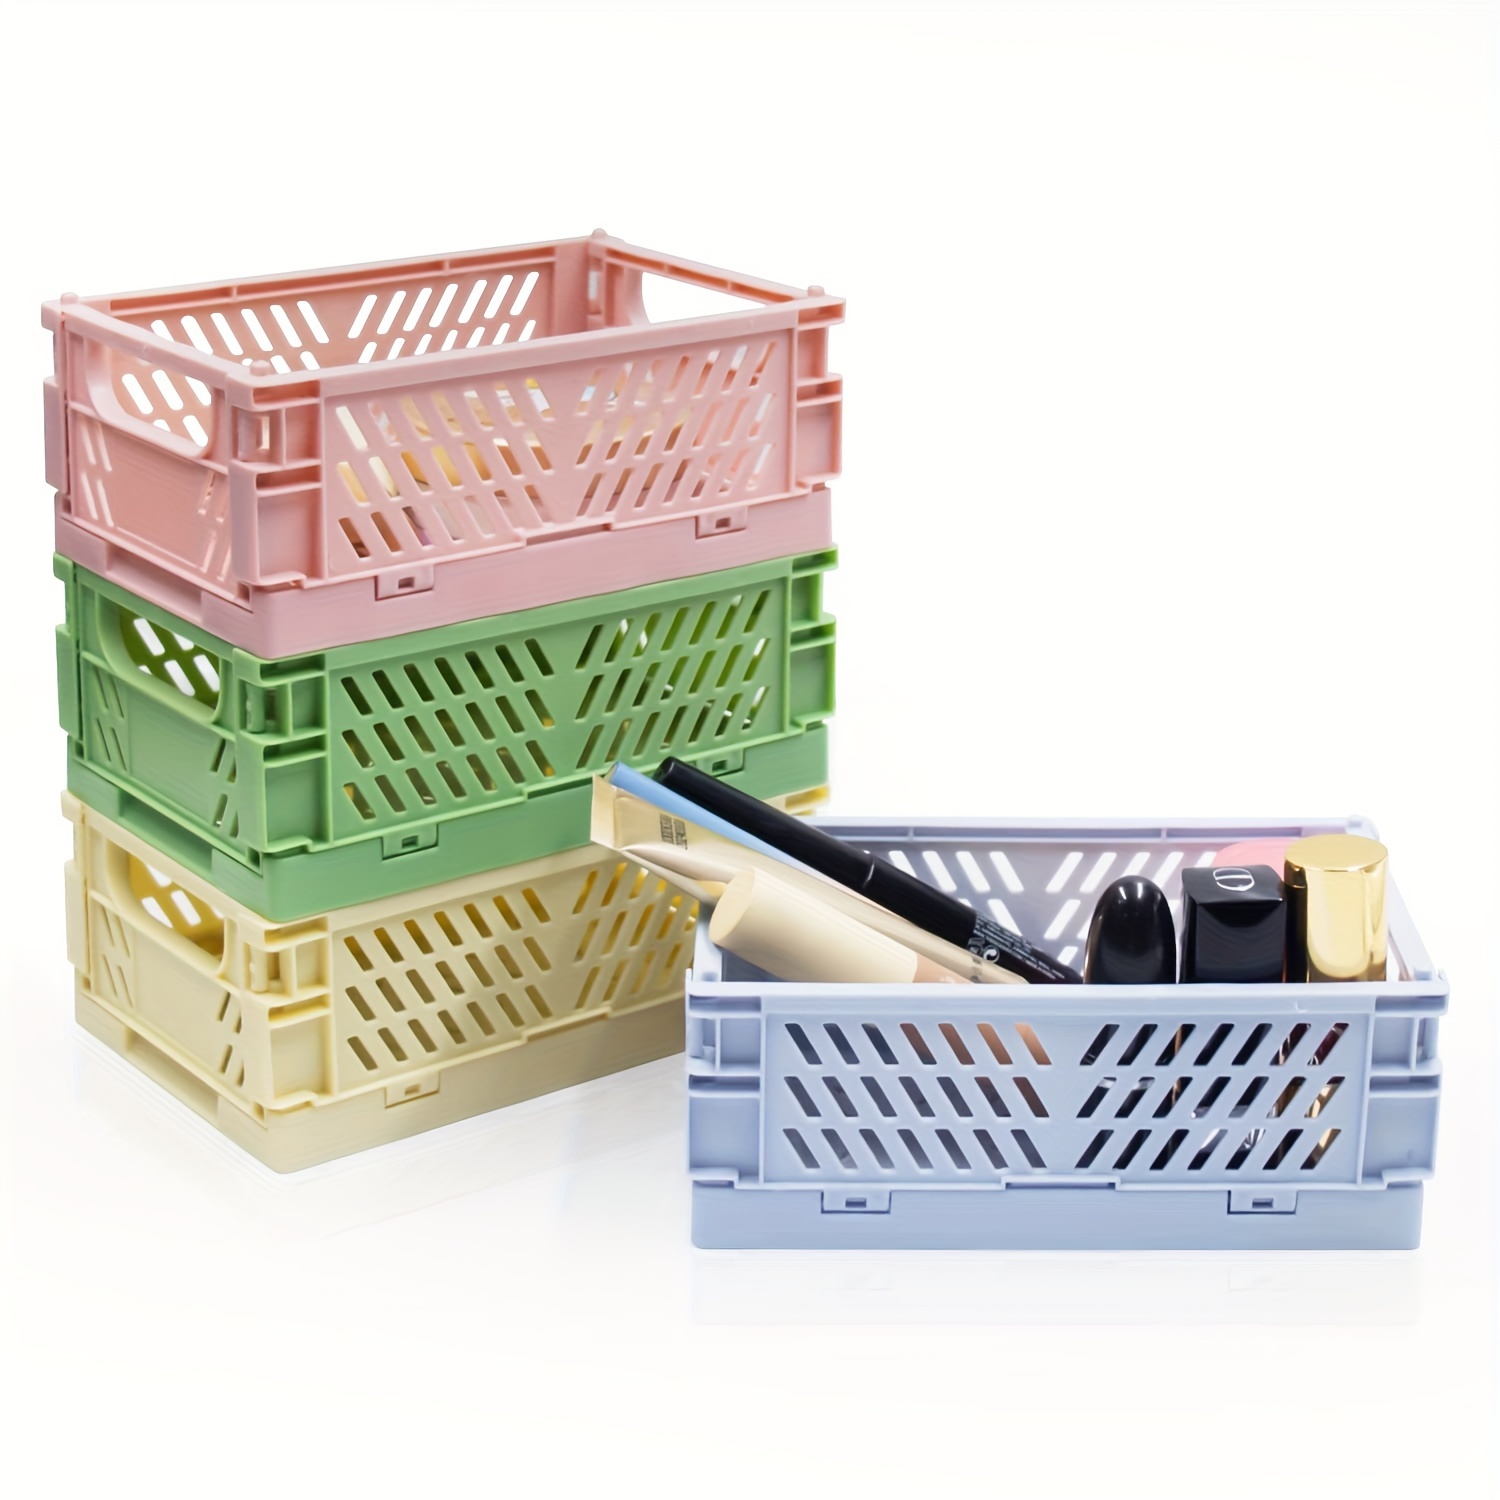 Paquete de 6 cestas de plástico de almacenamiento blancas, cesta de tejido  de plástico para organizar